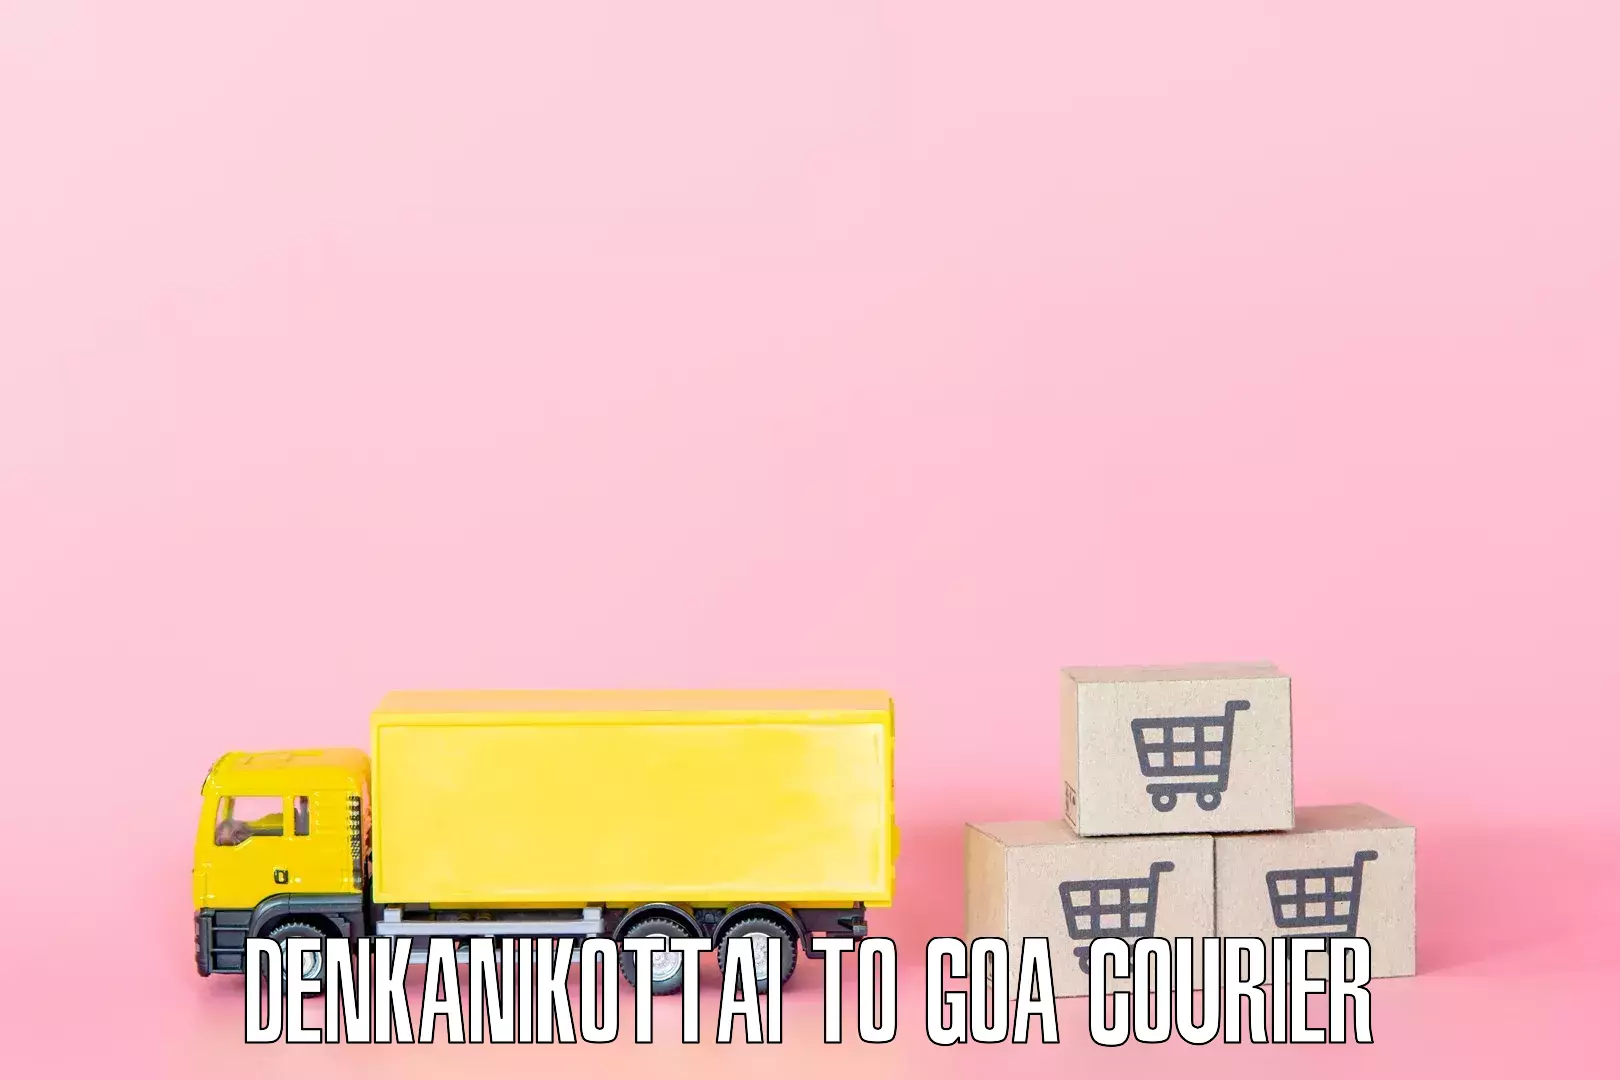 Home relocation services Denkanikottai to South Goa